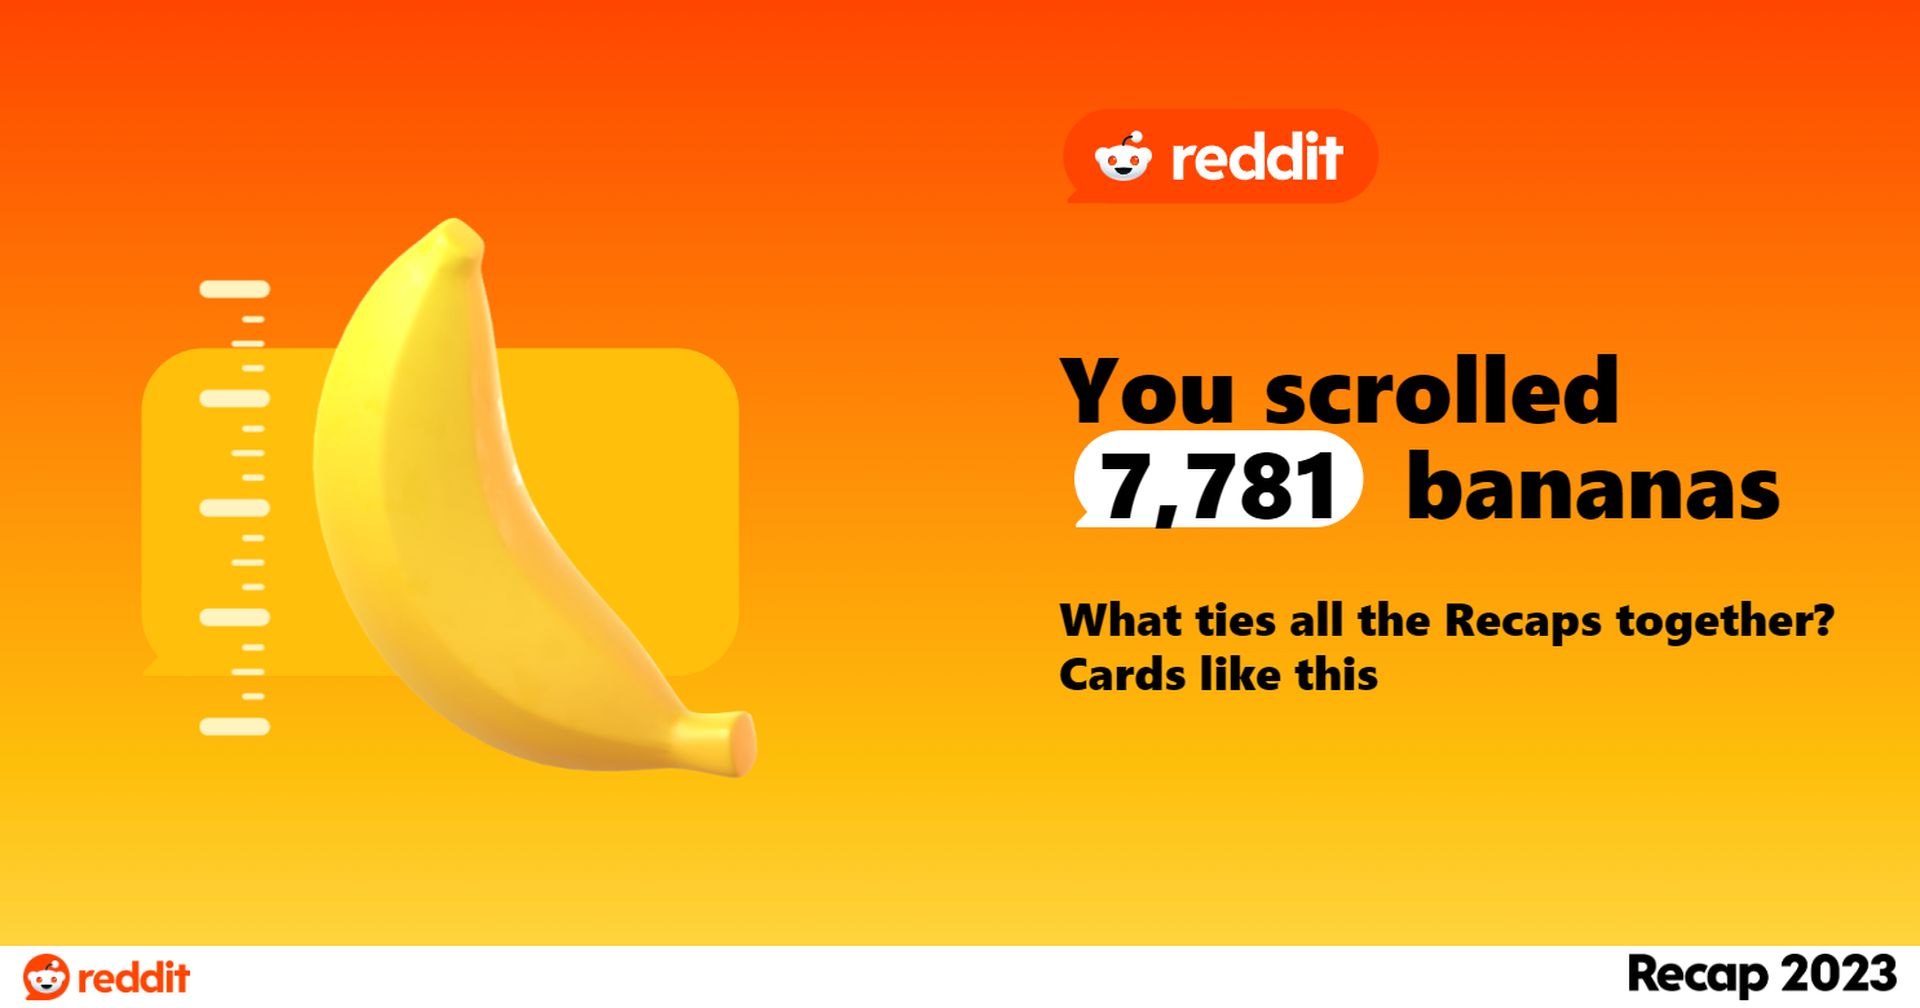 Megjelent a Reddit Recap 2023! Tudja meg, hány banánt görgetett fel idén